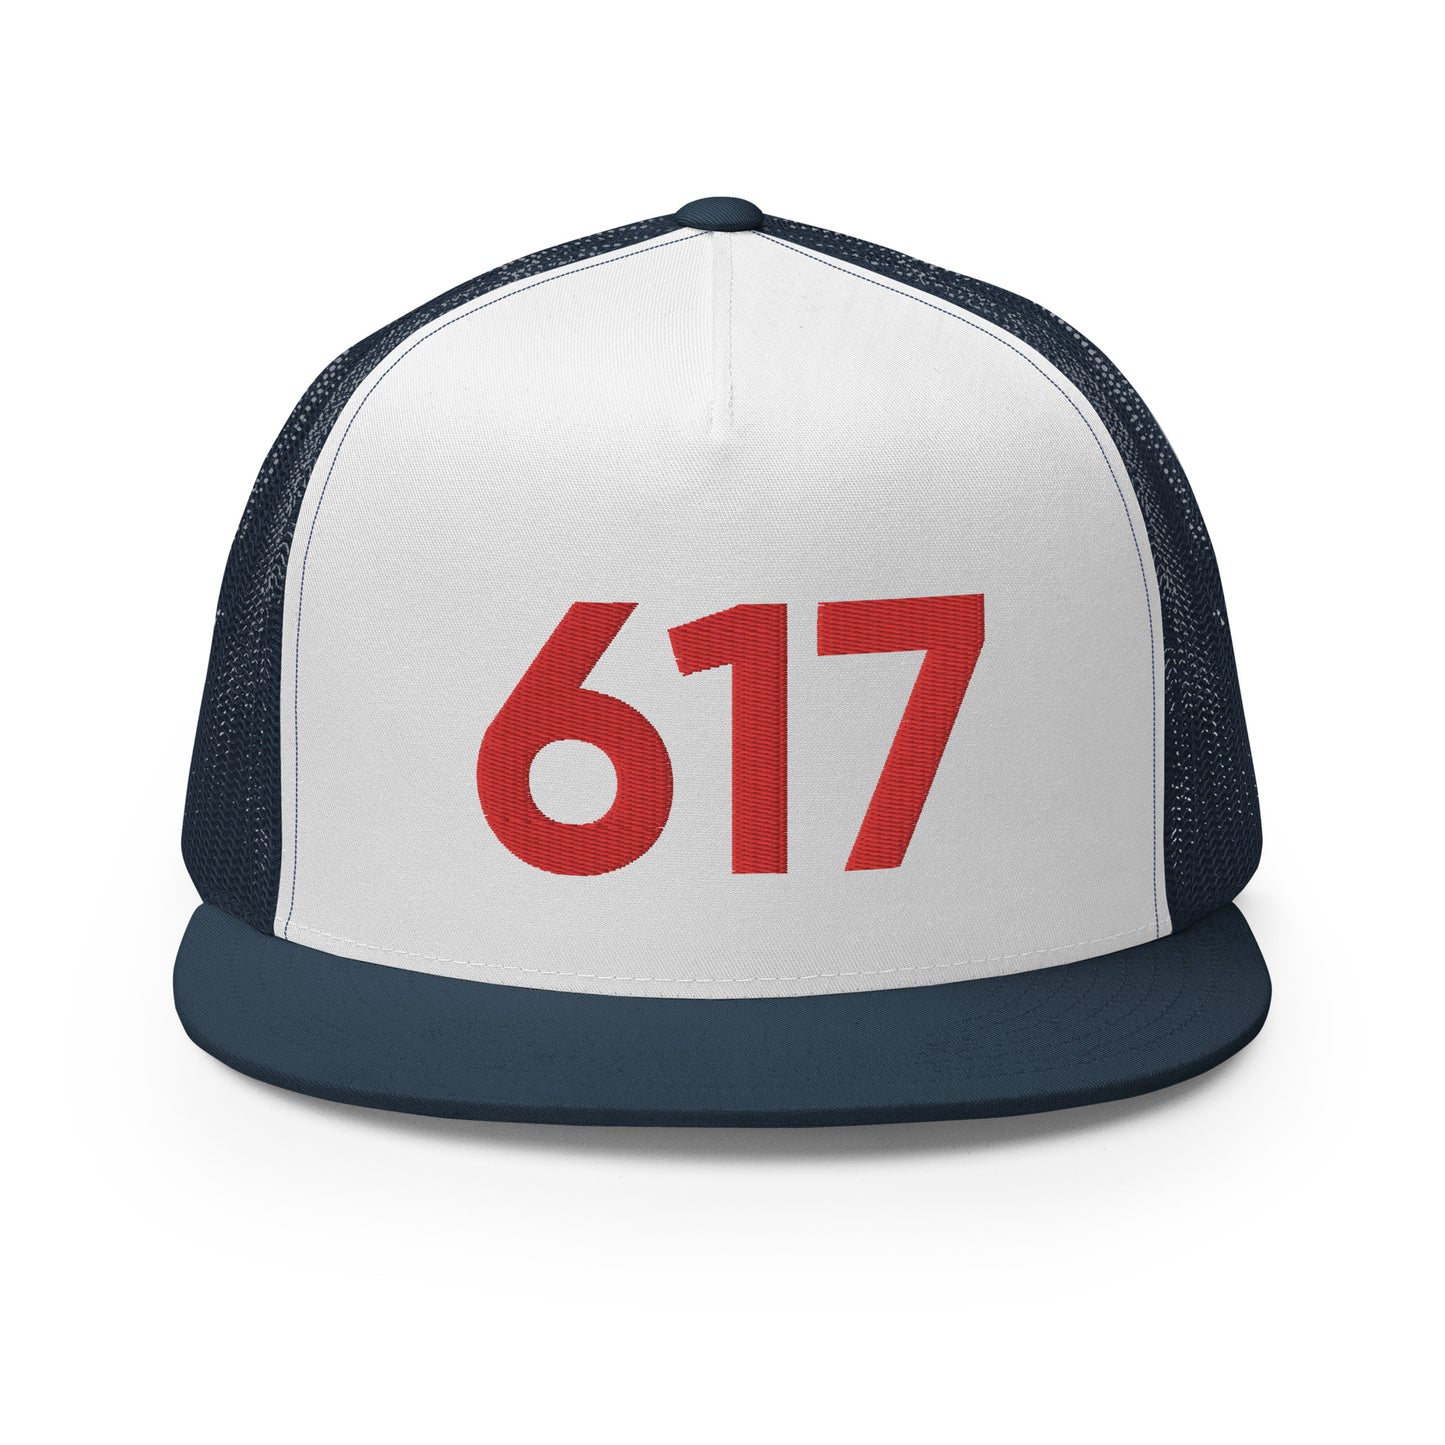 617 Boston Faithful Trucker Hat